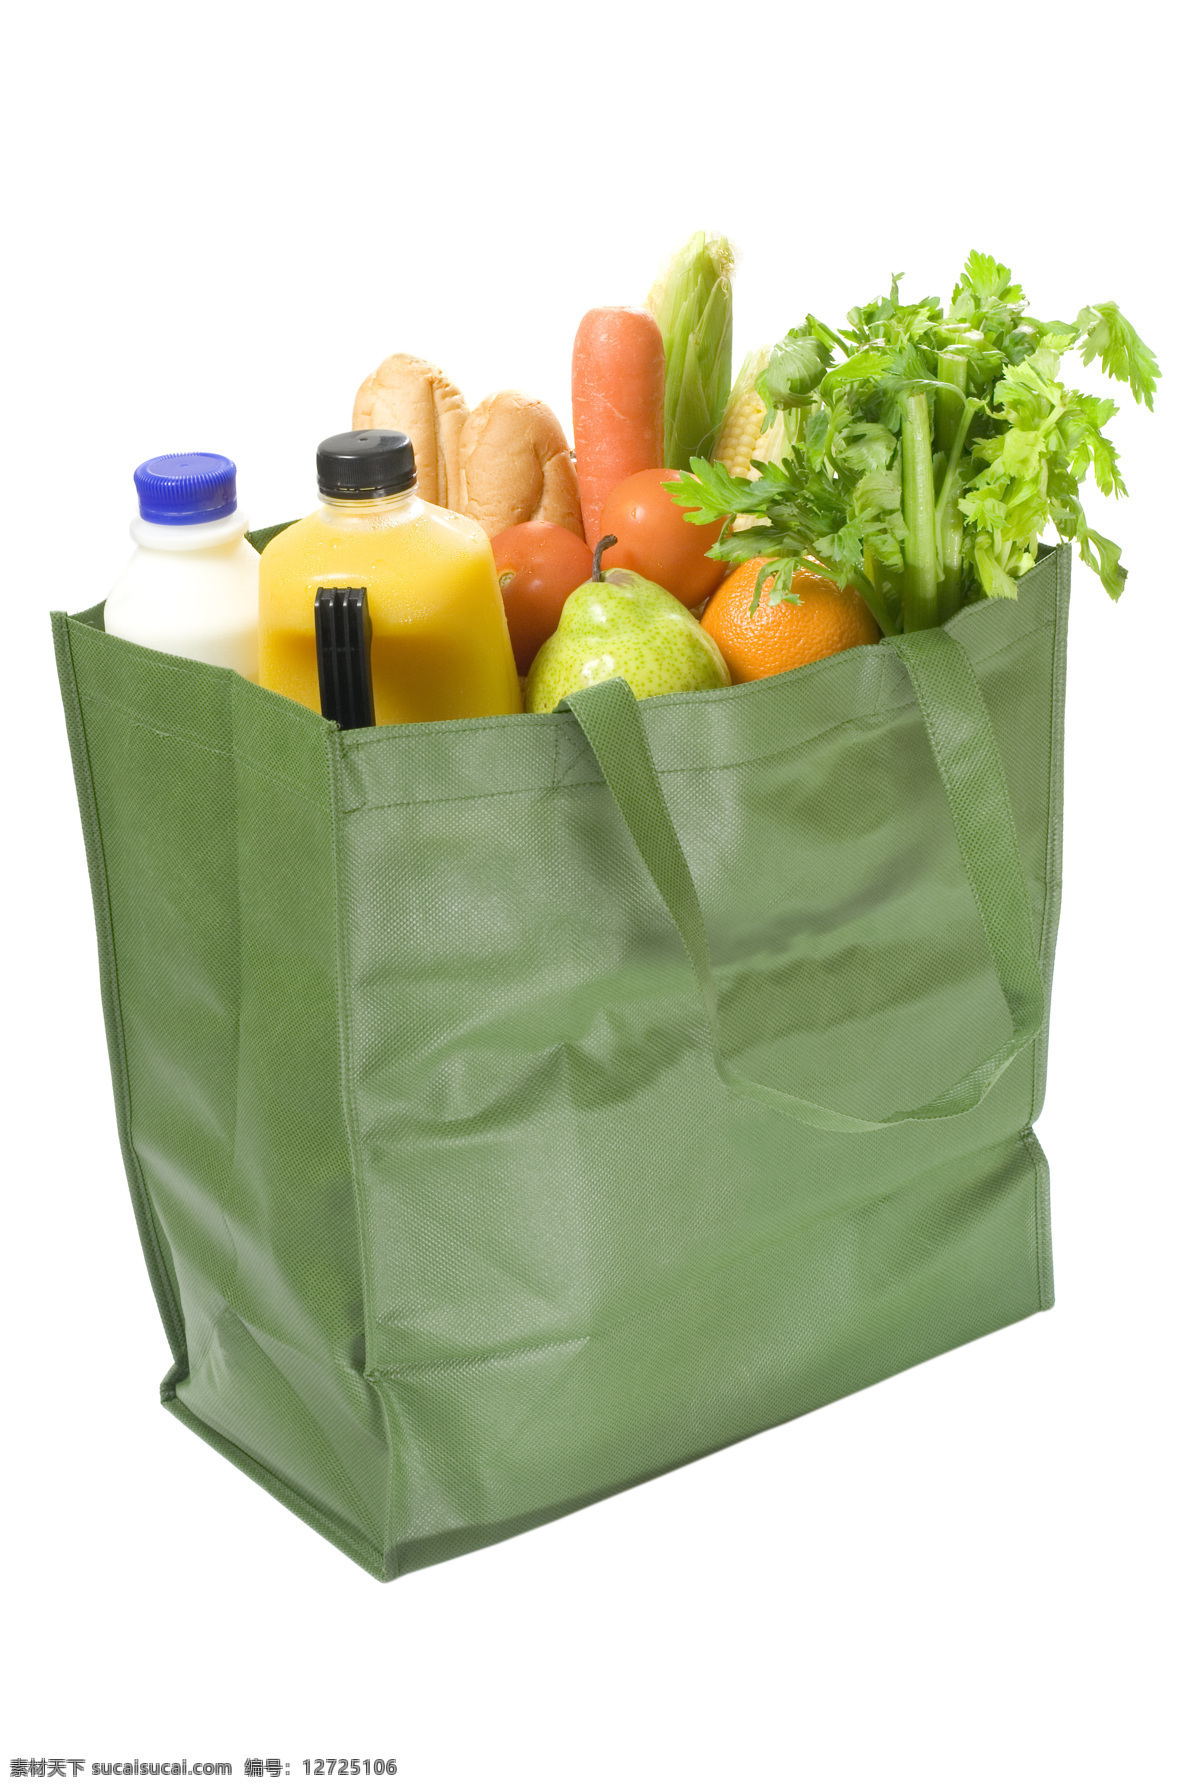 购物 手提袋 里 水果 蔬菜 牛奶 胡萝卜 面包 芹菜 购物手提袋 新鲜水果 食物 美食 水果图片 餐饮美食